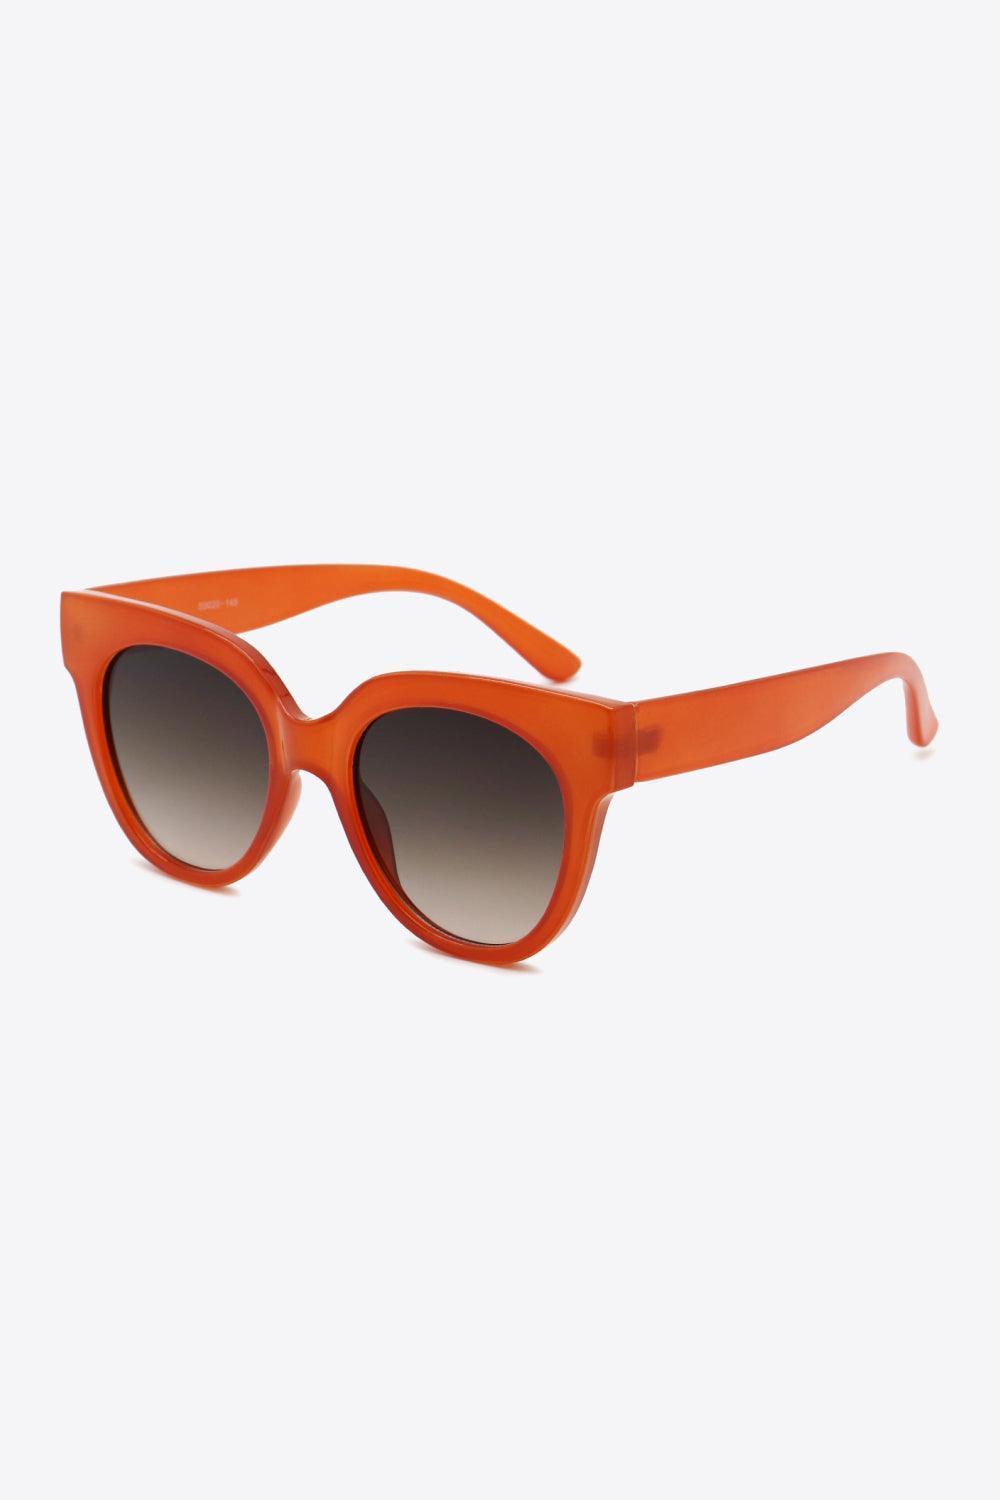 Deep Red Frame Round Polycarbonate Sunglasses - MXSTUDIO.COM